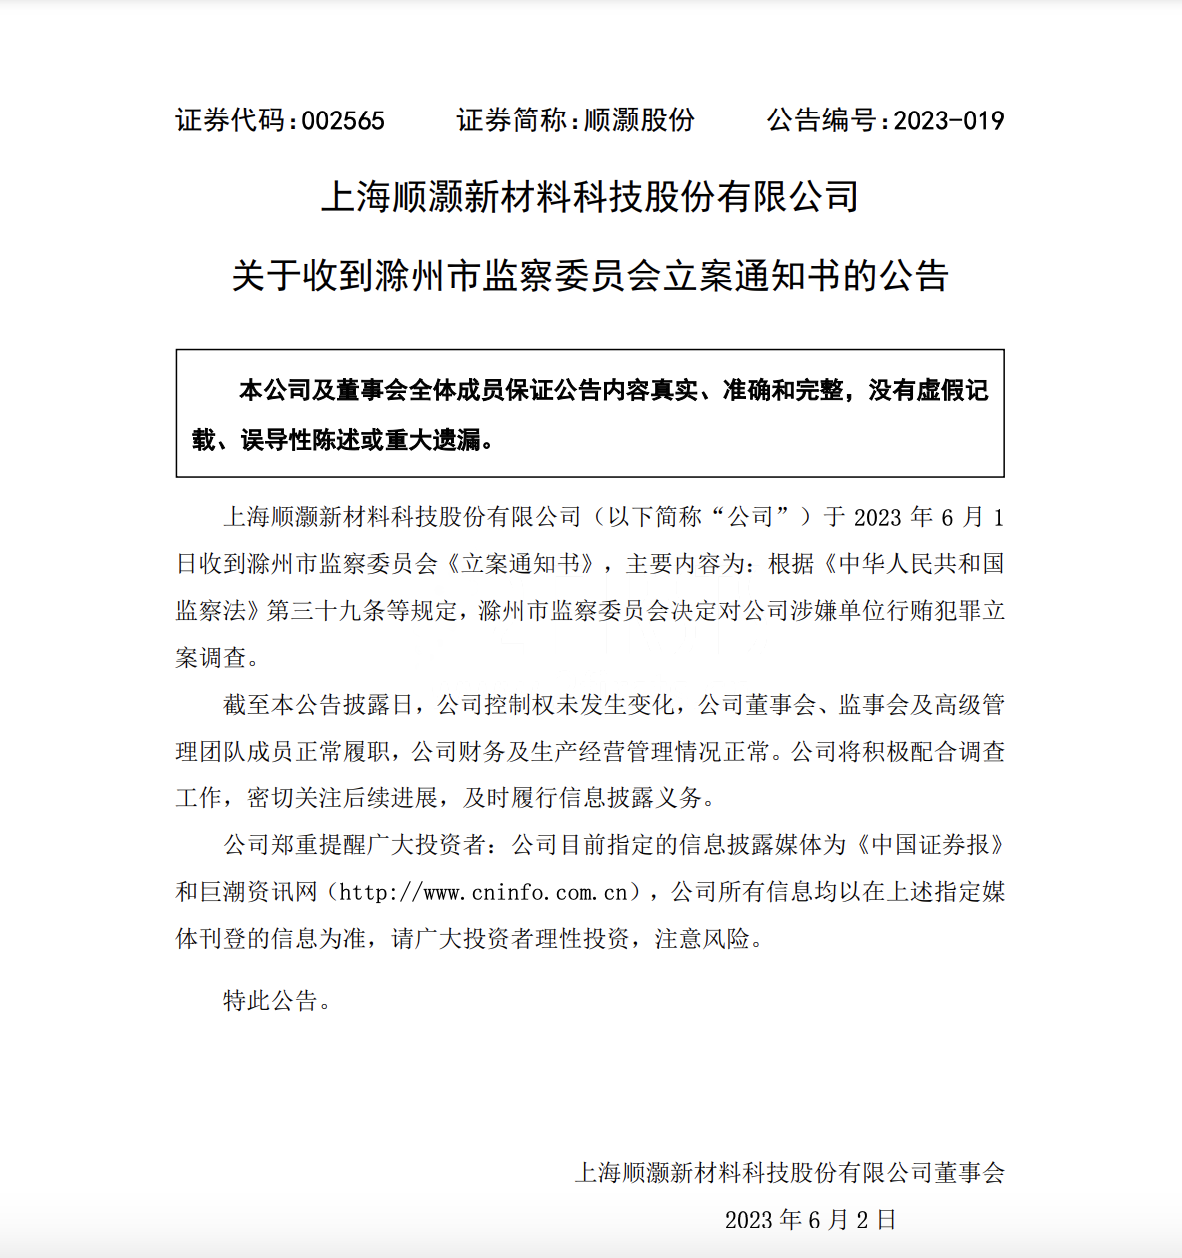 顺灏股份发布公告：滁州市监察委员会决定对公司涉嫌单位行贿犯罪立案调查